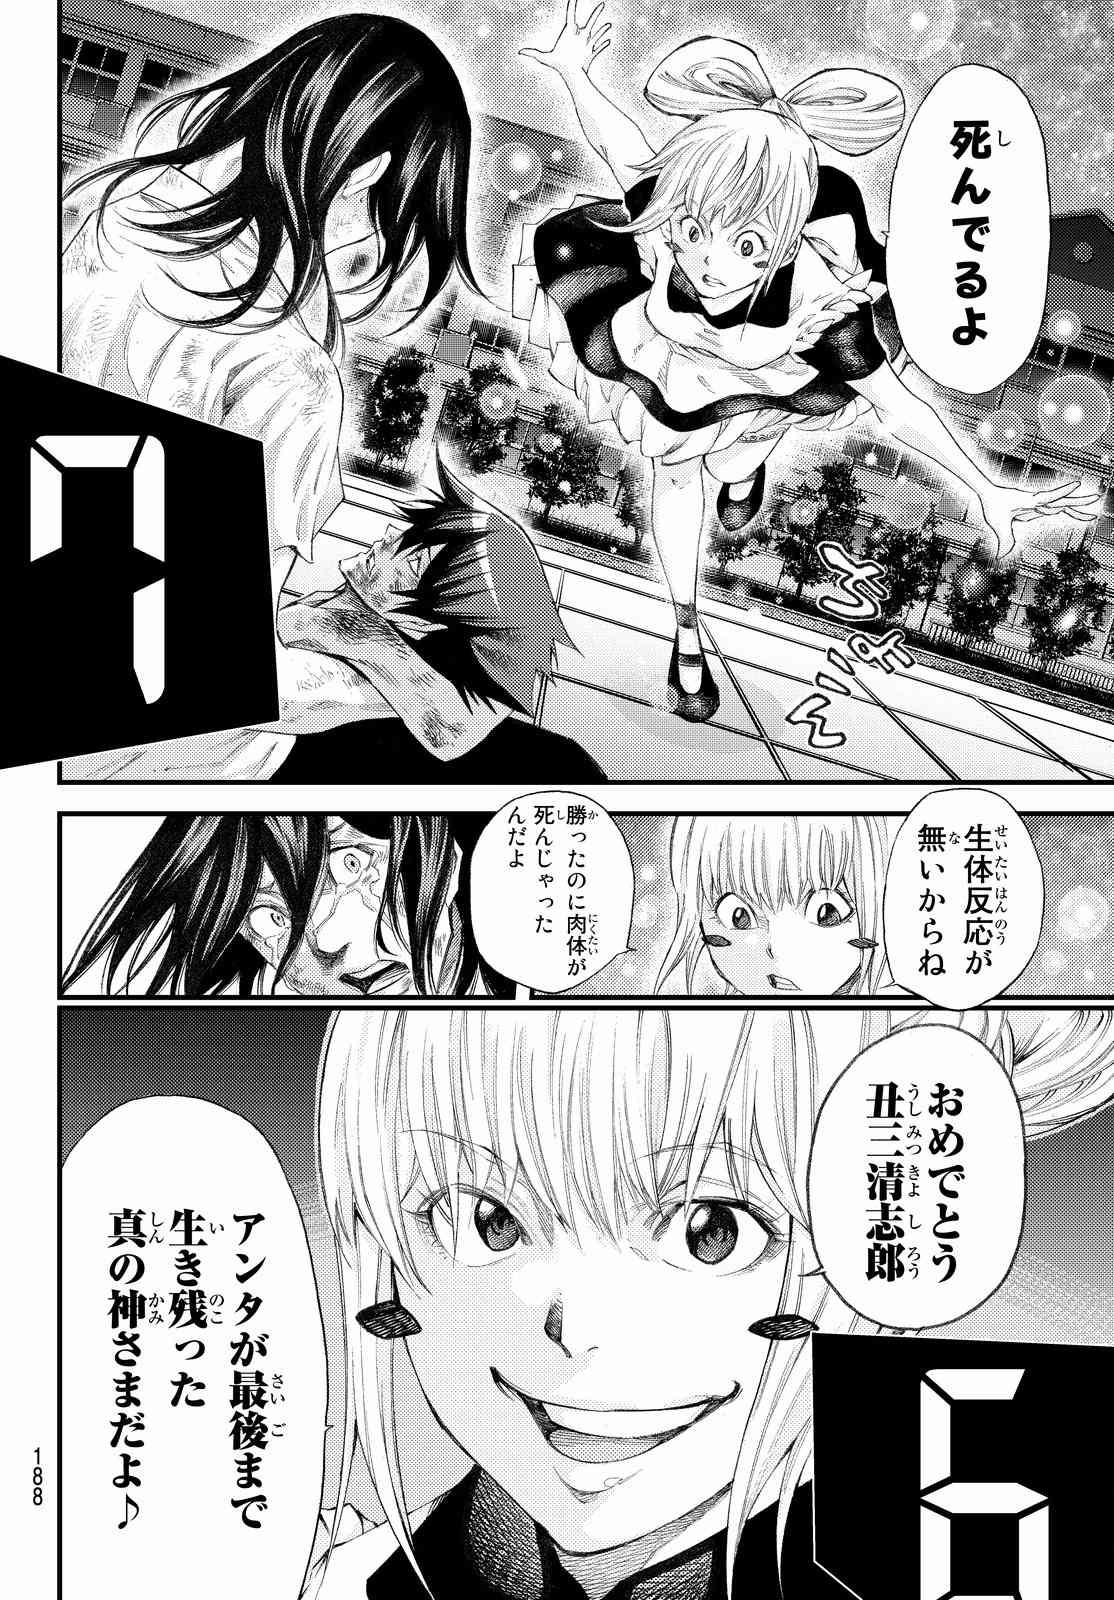 Kamisama no Ituori - Chapter Final - Page 4